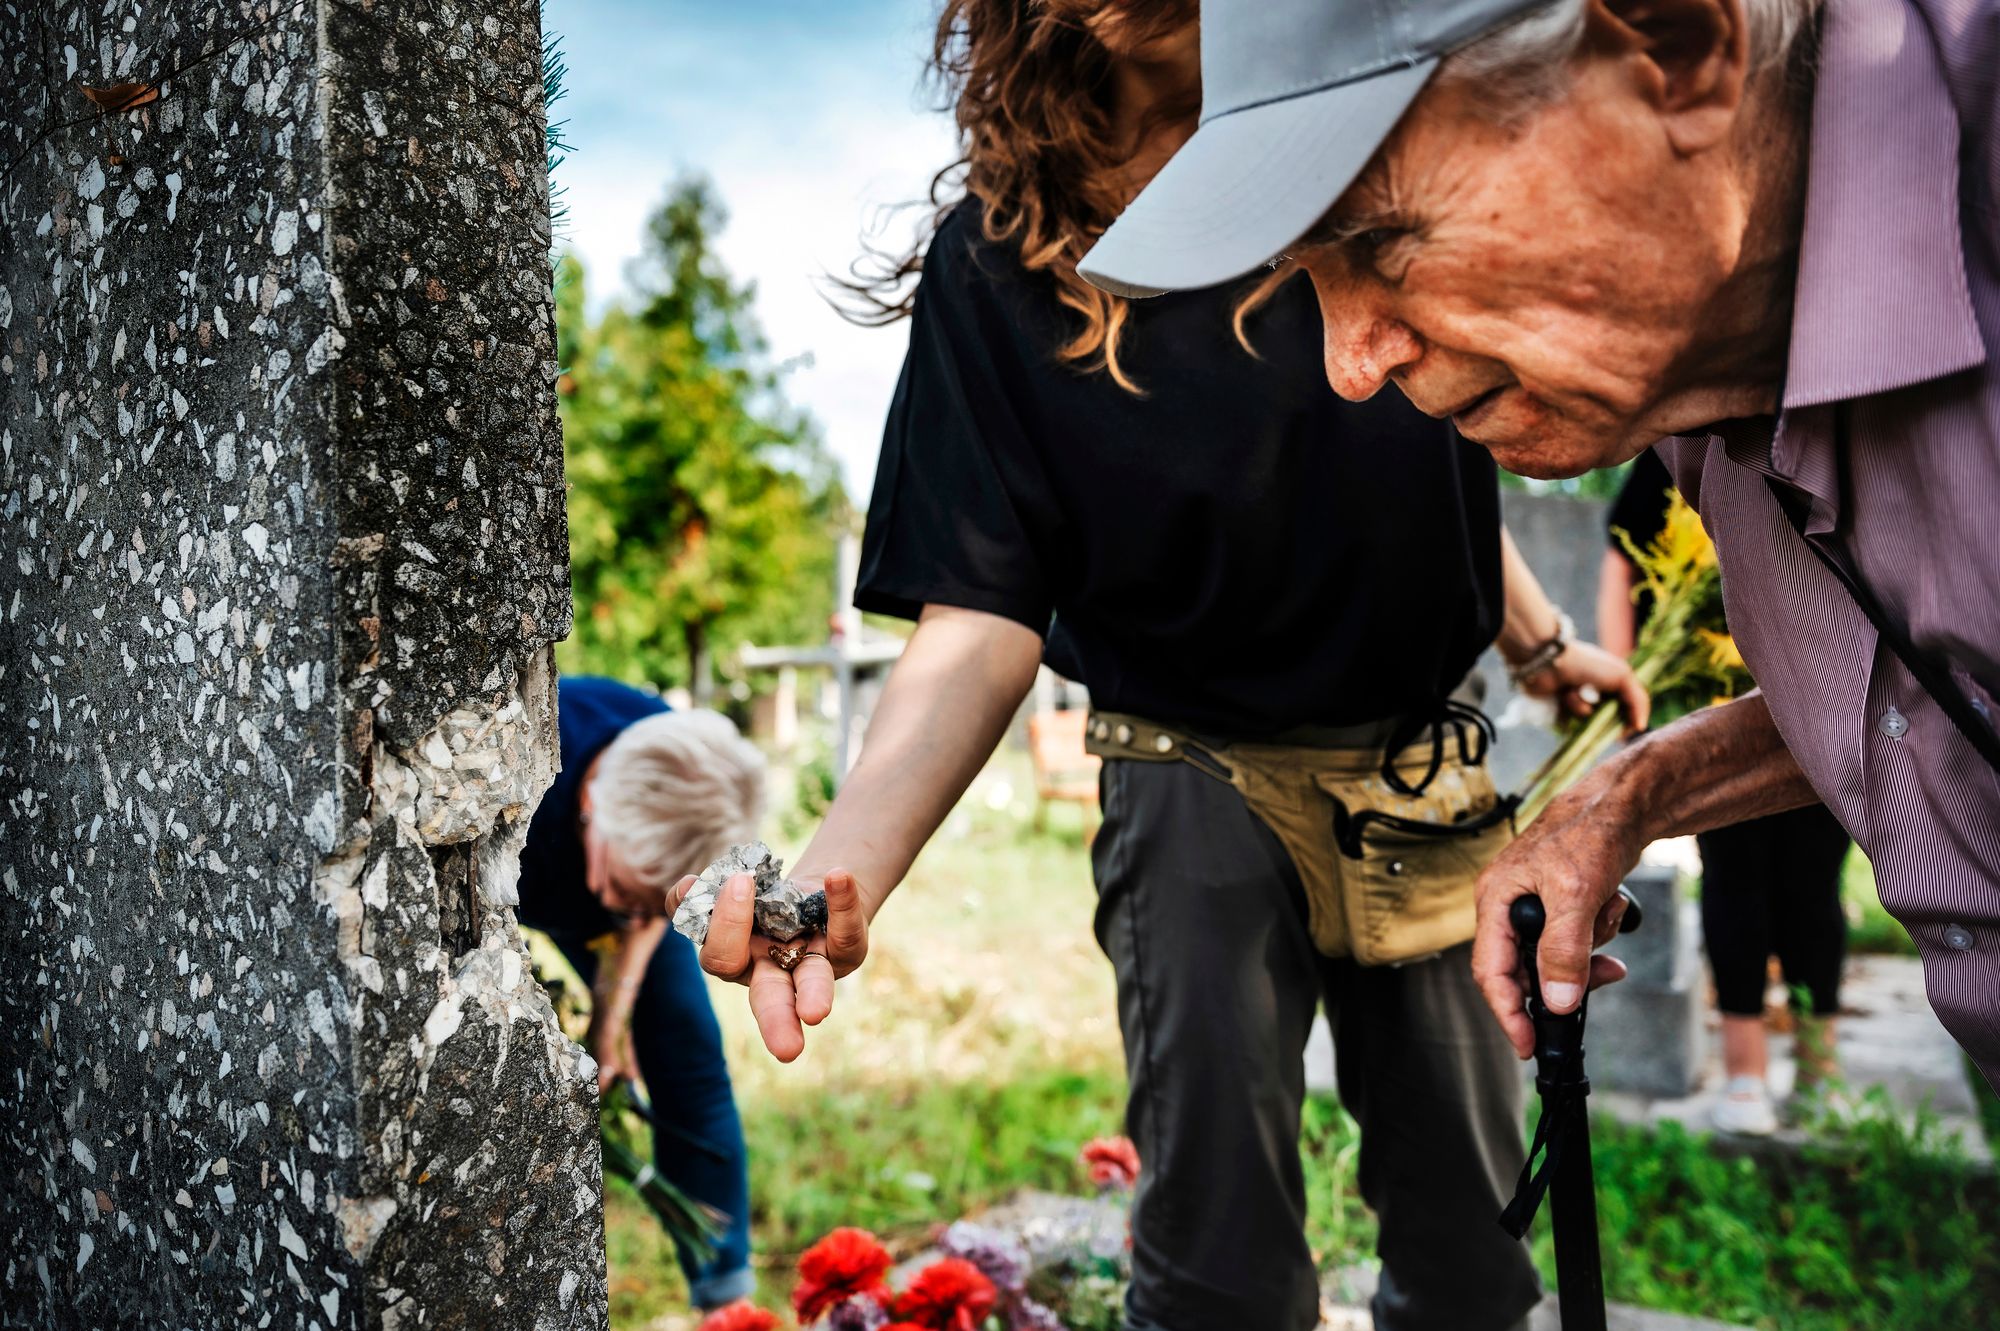 Могила матери Владимира, 1899 года рождения, повреждена выстрелами русских. ”Мне нужно много времени, чтобы привести в порядок могилы всех родных.” - говорит Владимир.